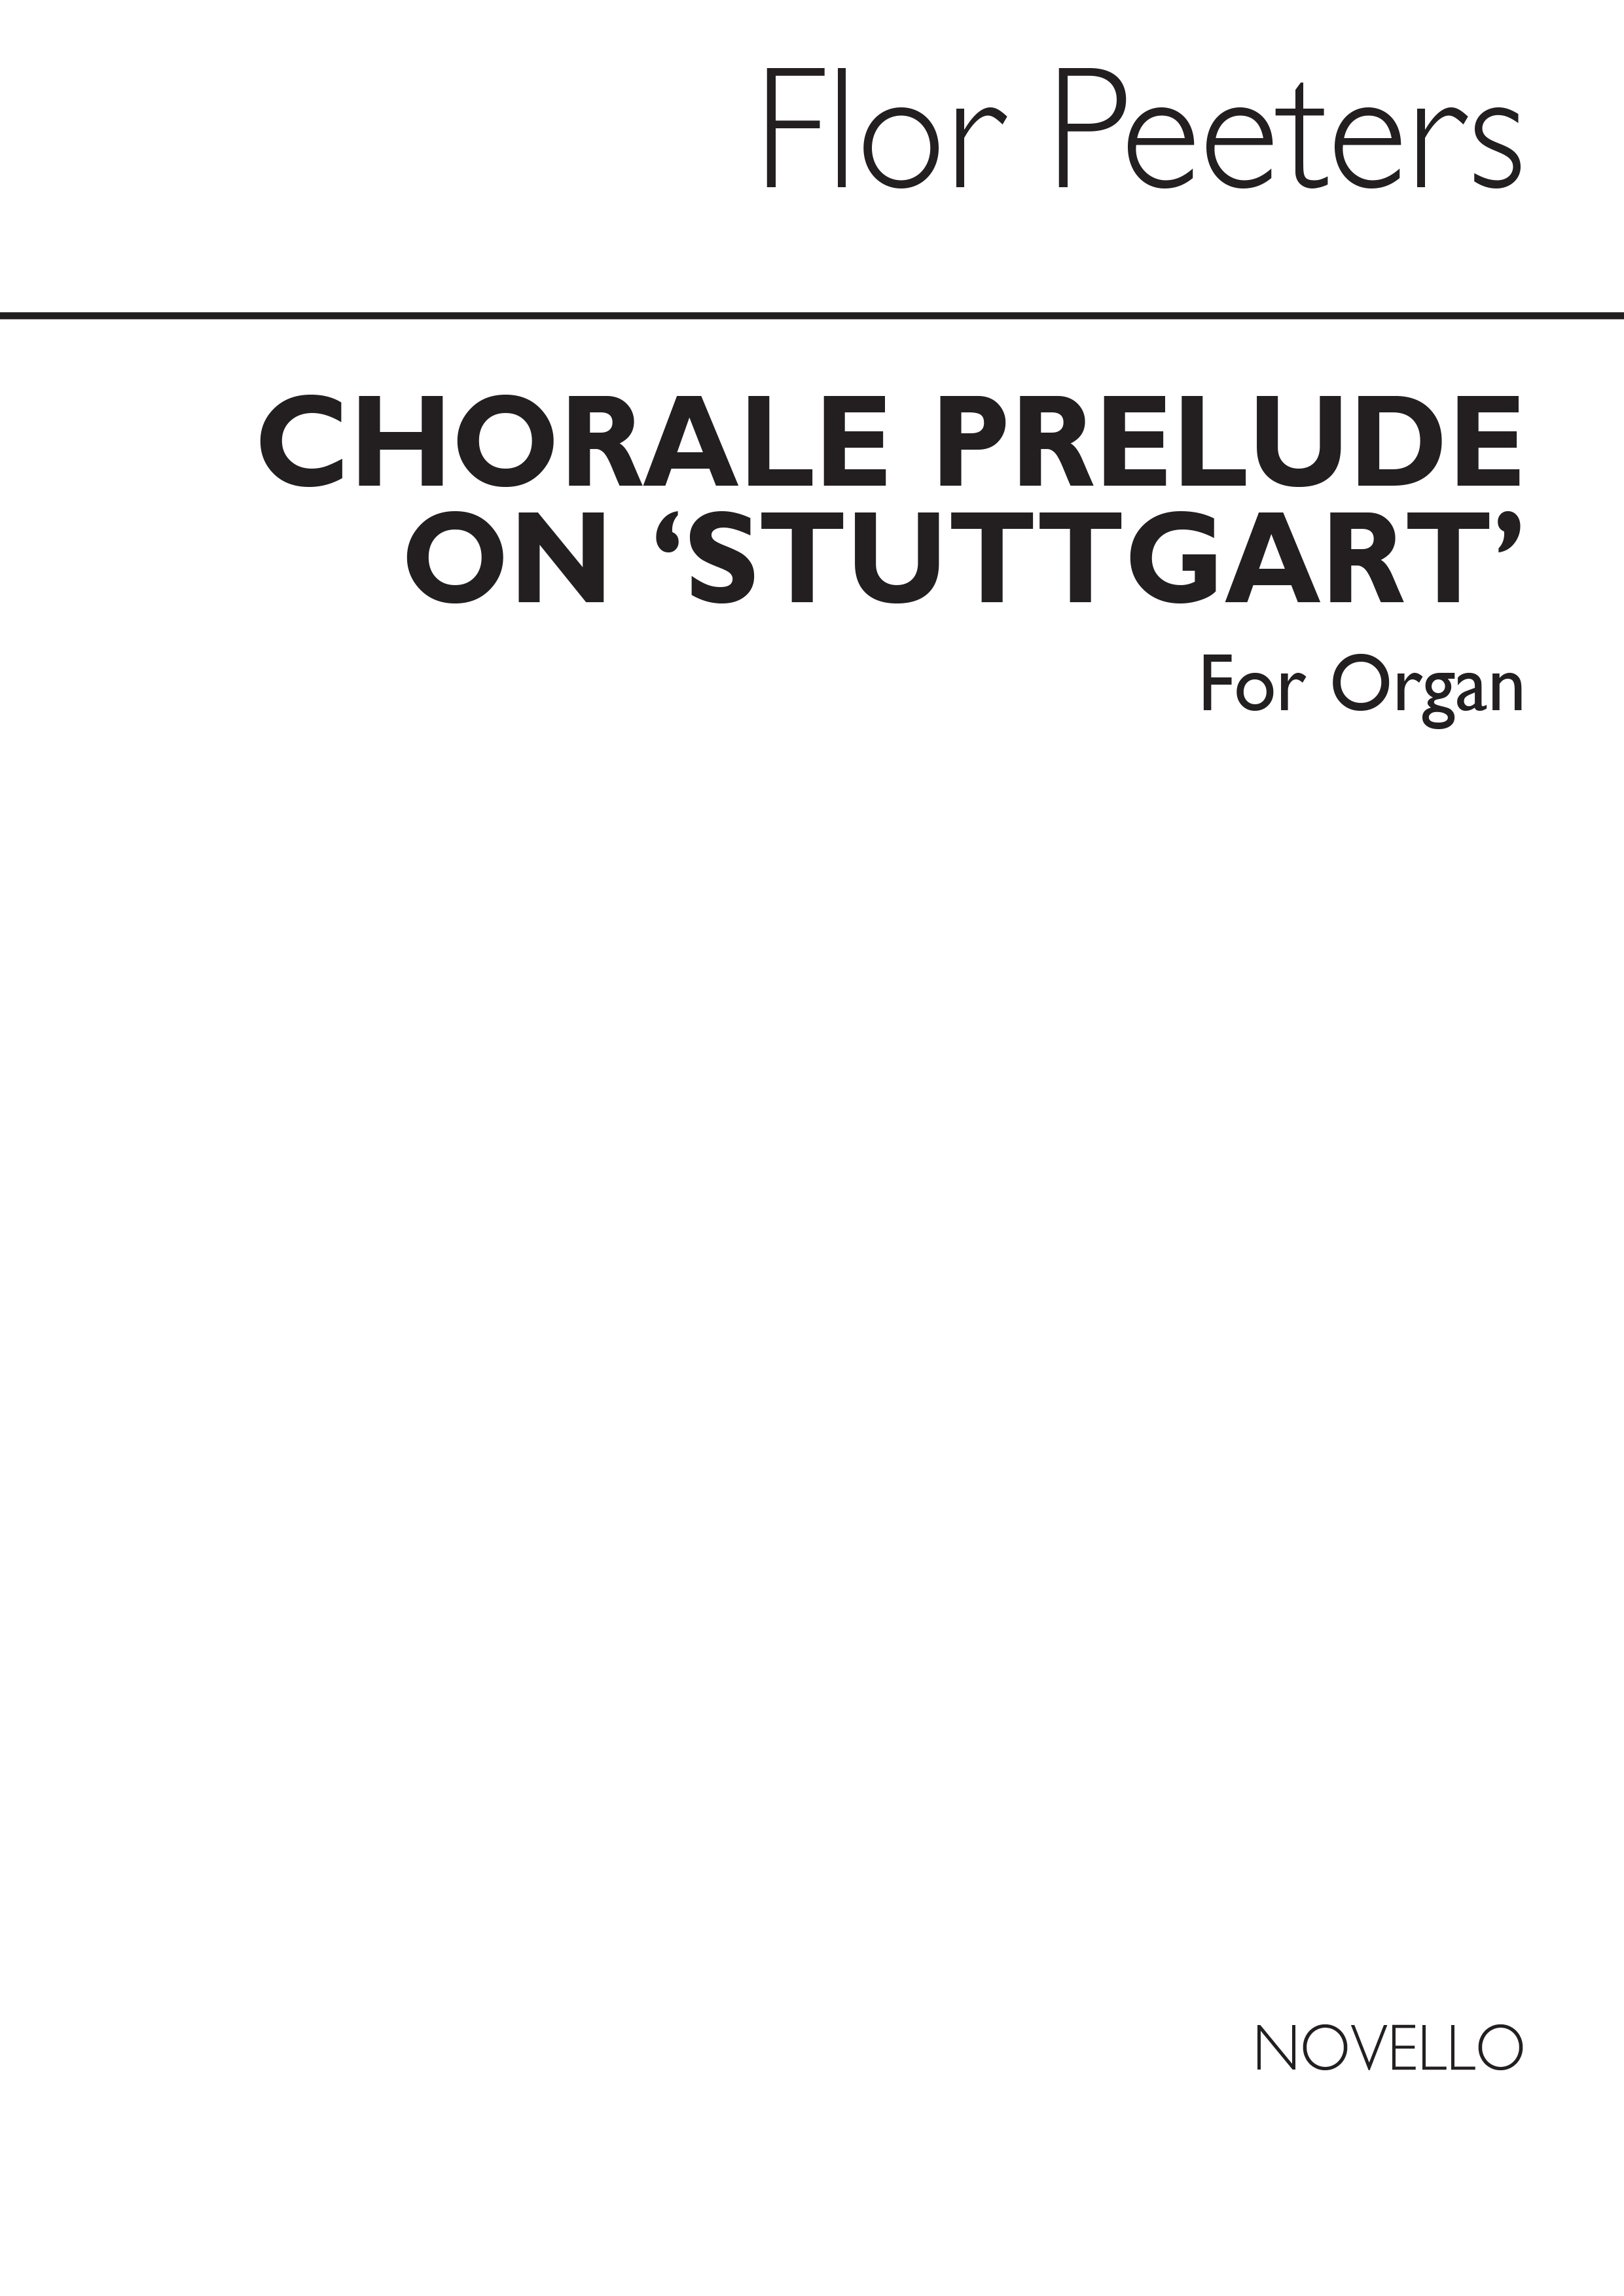 Flor Peeters: Chorale Prelude On 'Stuttgart' Organ